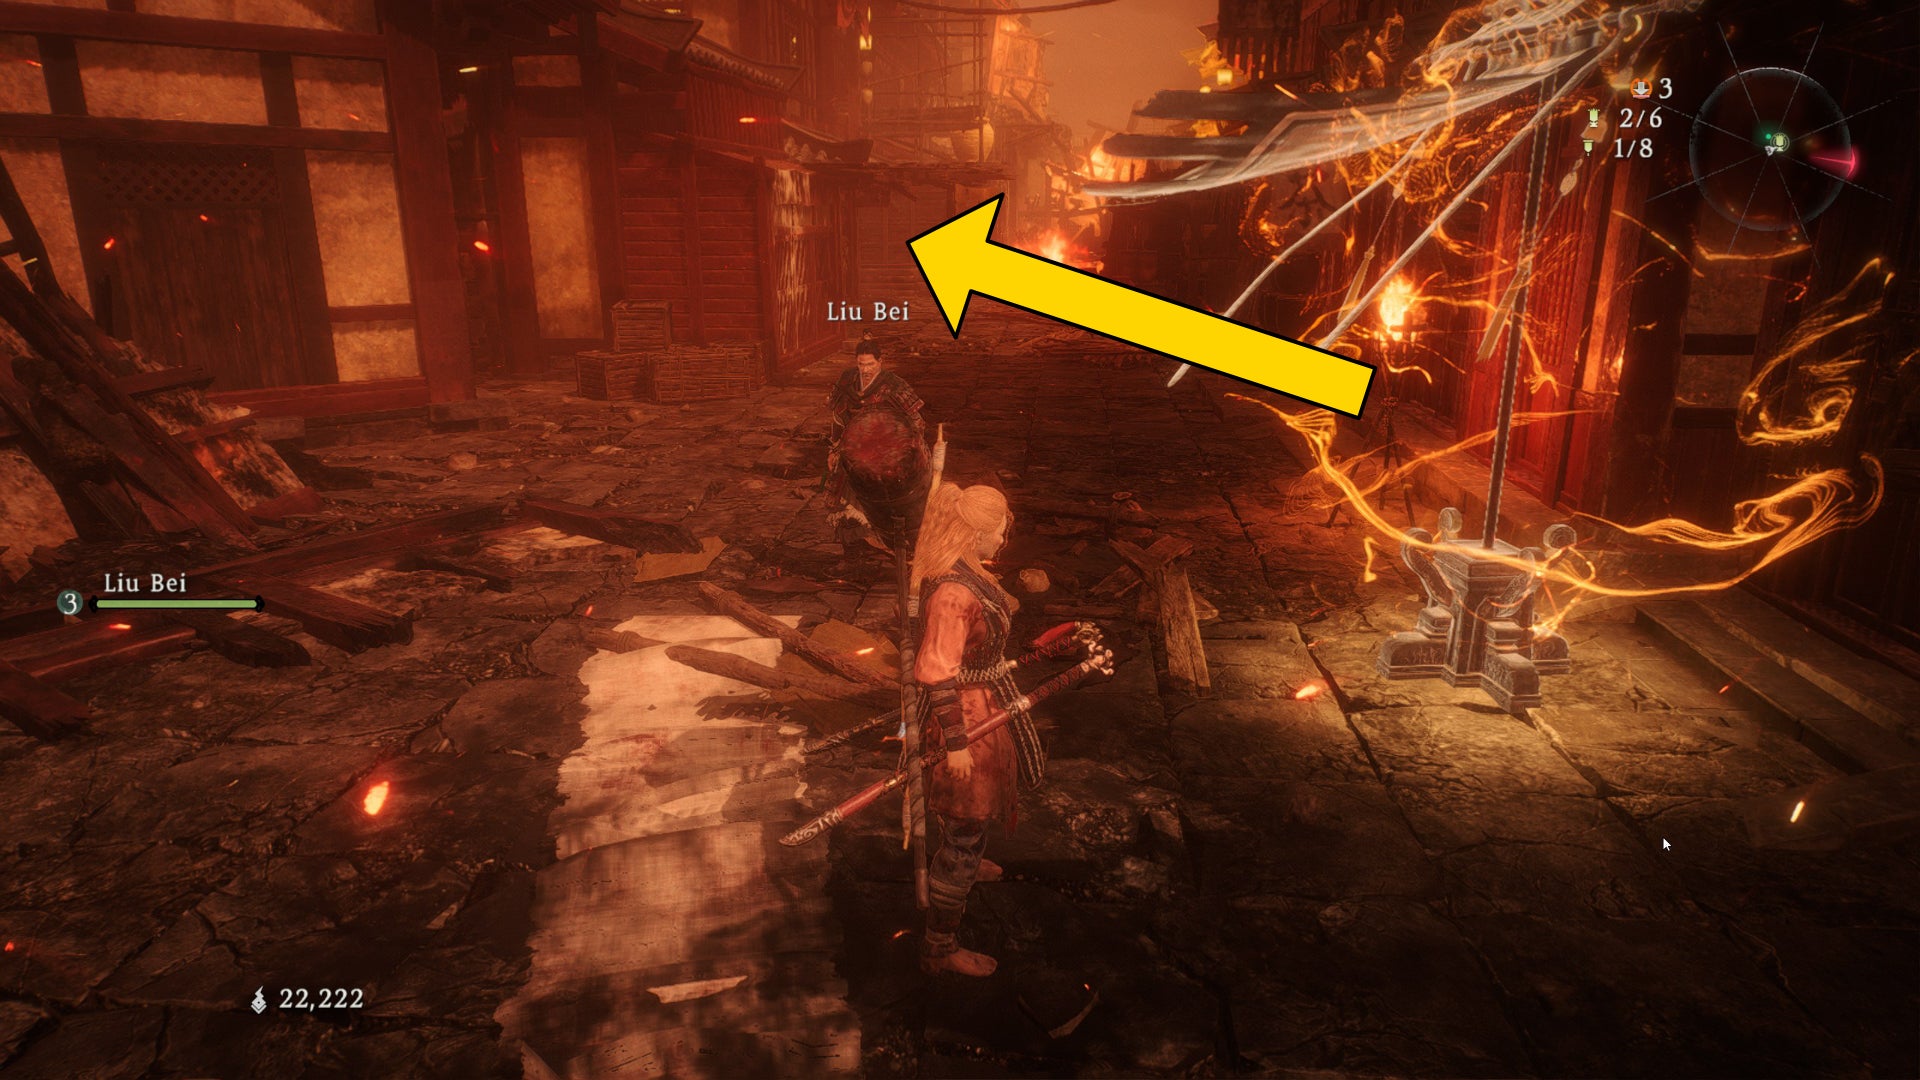 El jugador de Wo Long se encuentra junto a una bandera de batalla en la carretera principal de una ciudad en llamas, con una flecha que marca la ubicación del Shitieshou más cercano.